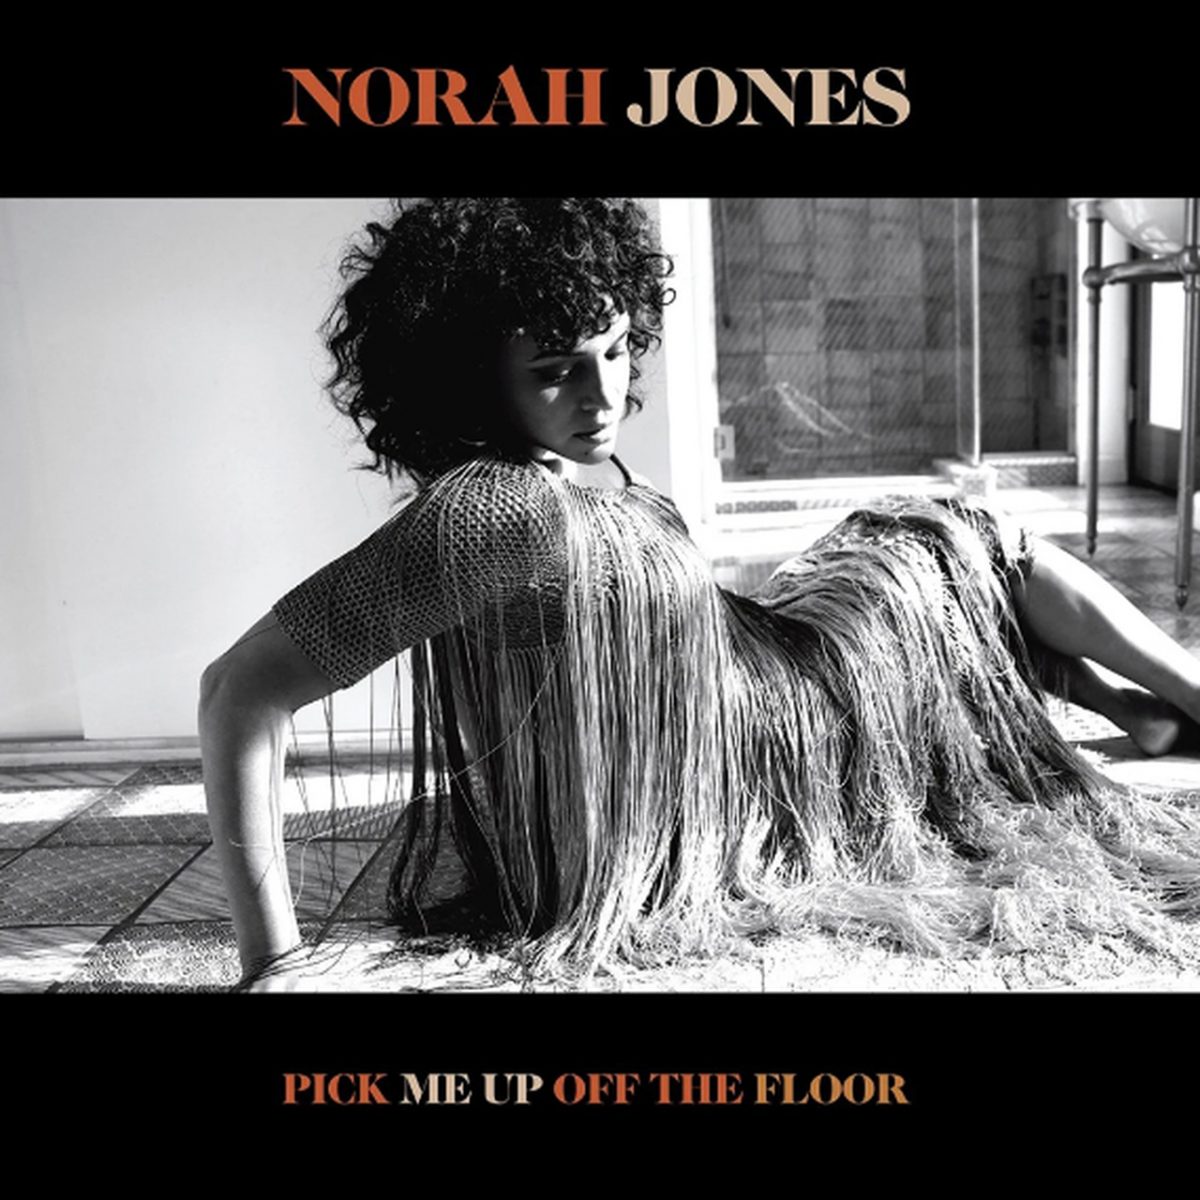 Norah Jones – Pick Me Up Off the Floor